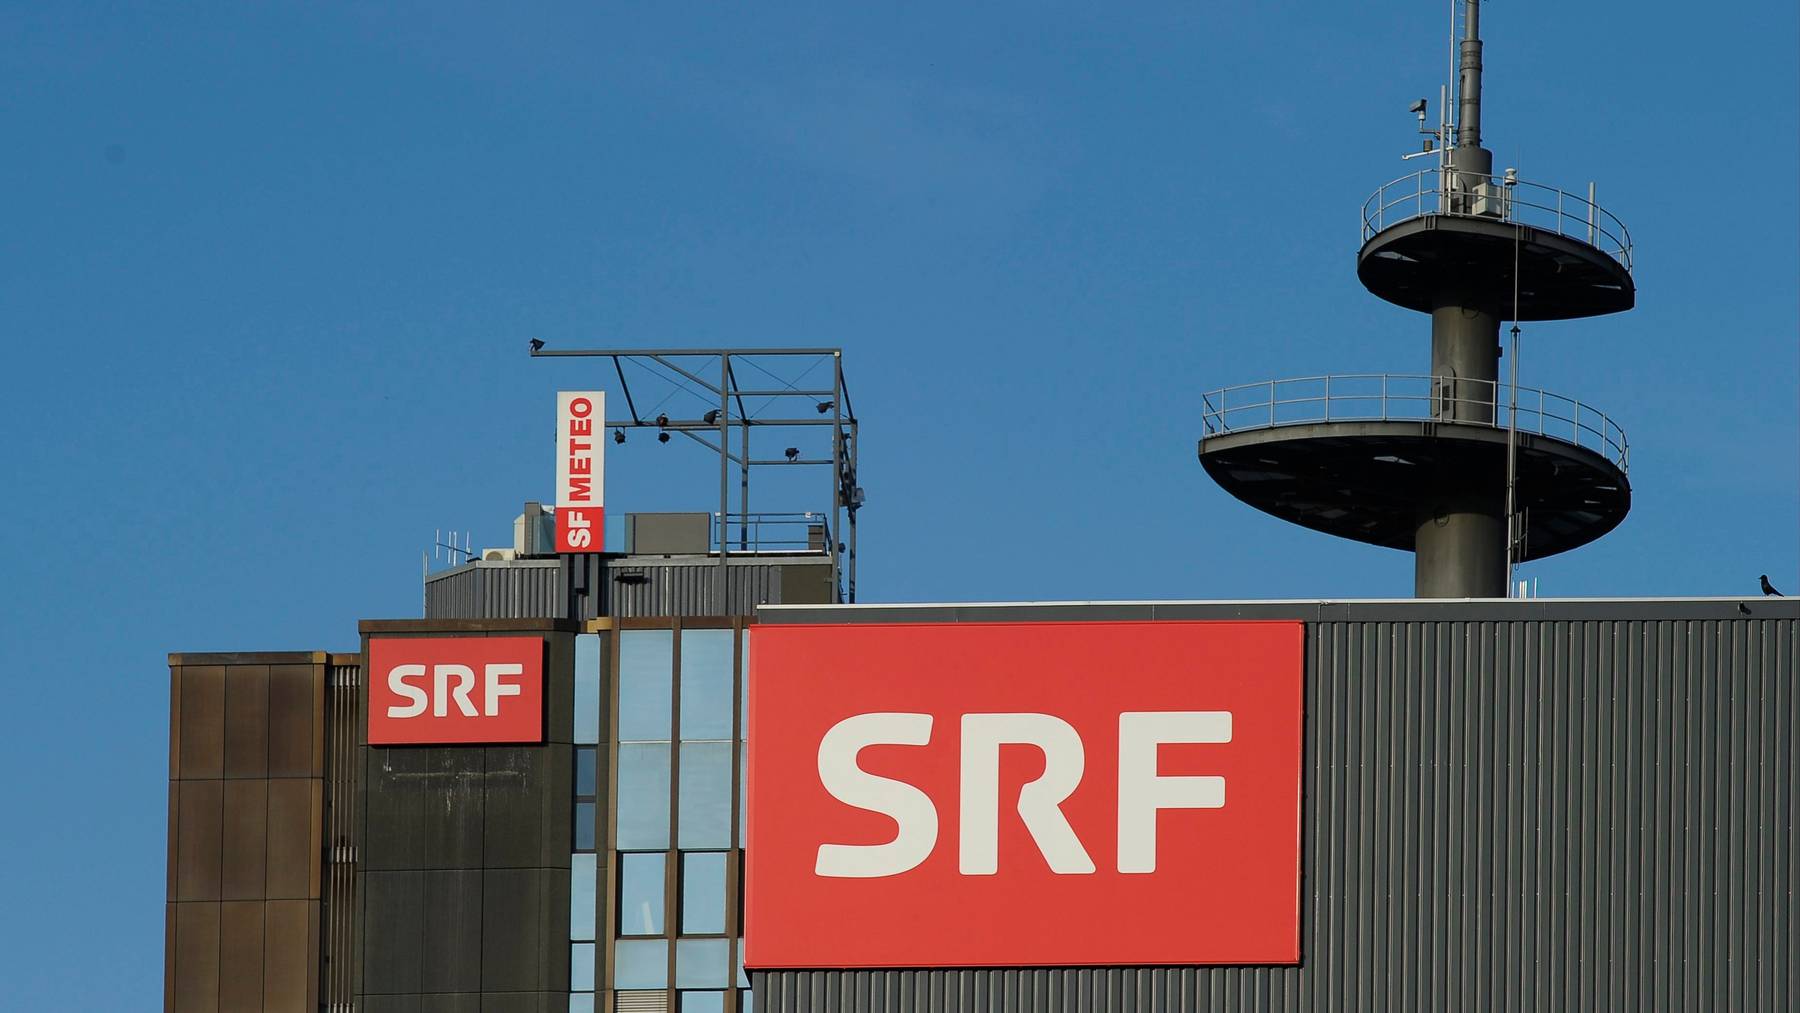 SRF will vermehrt auf digitale Kanäle setzen und spart derweil im linearen Programm.